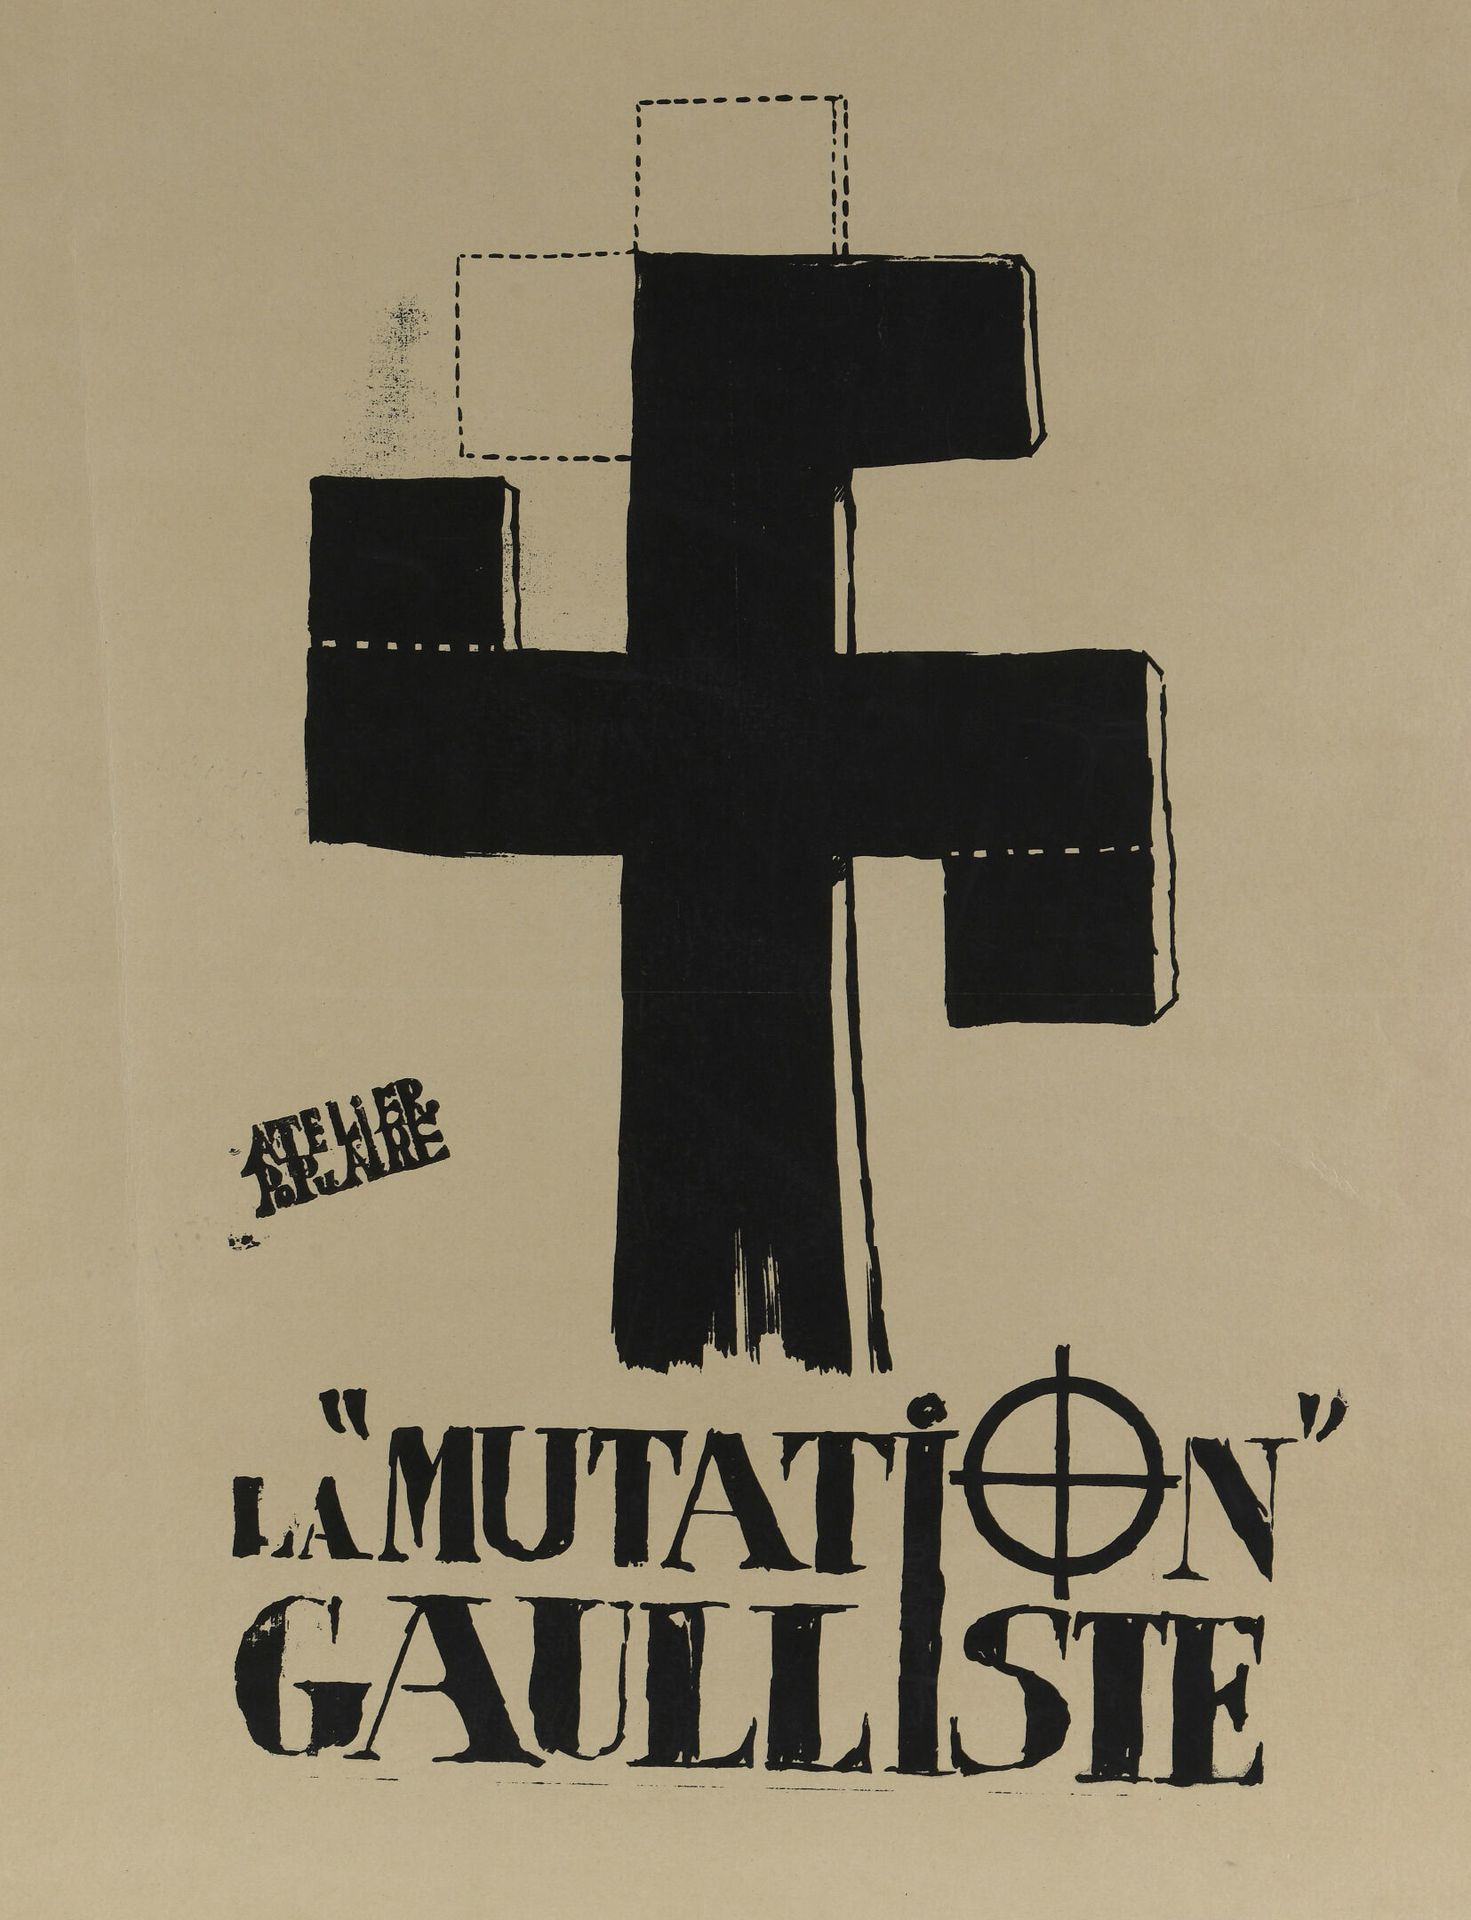 Null [Manifesto del maggio 1968]

Atelier Populaire

La mutazione gollista

Seri&hellip;